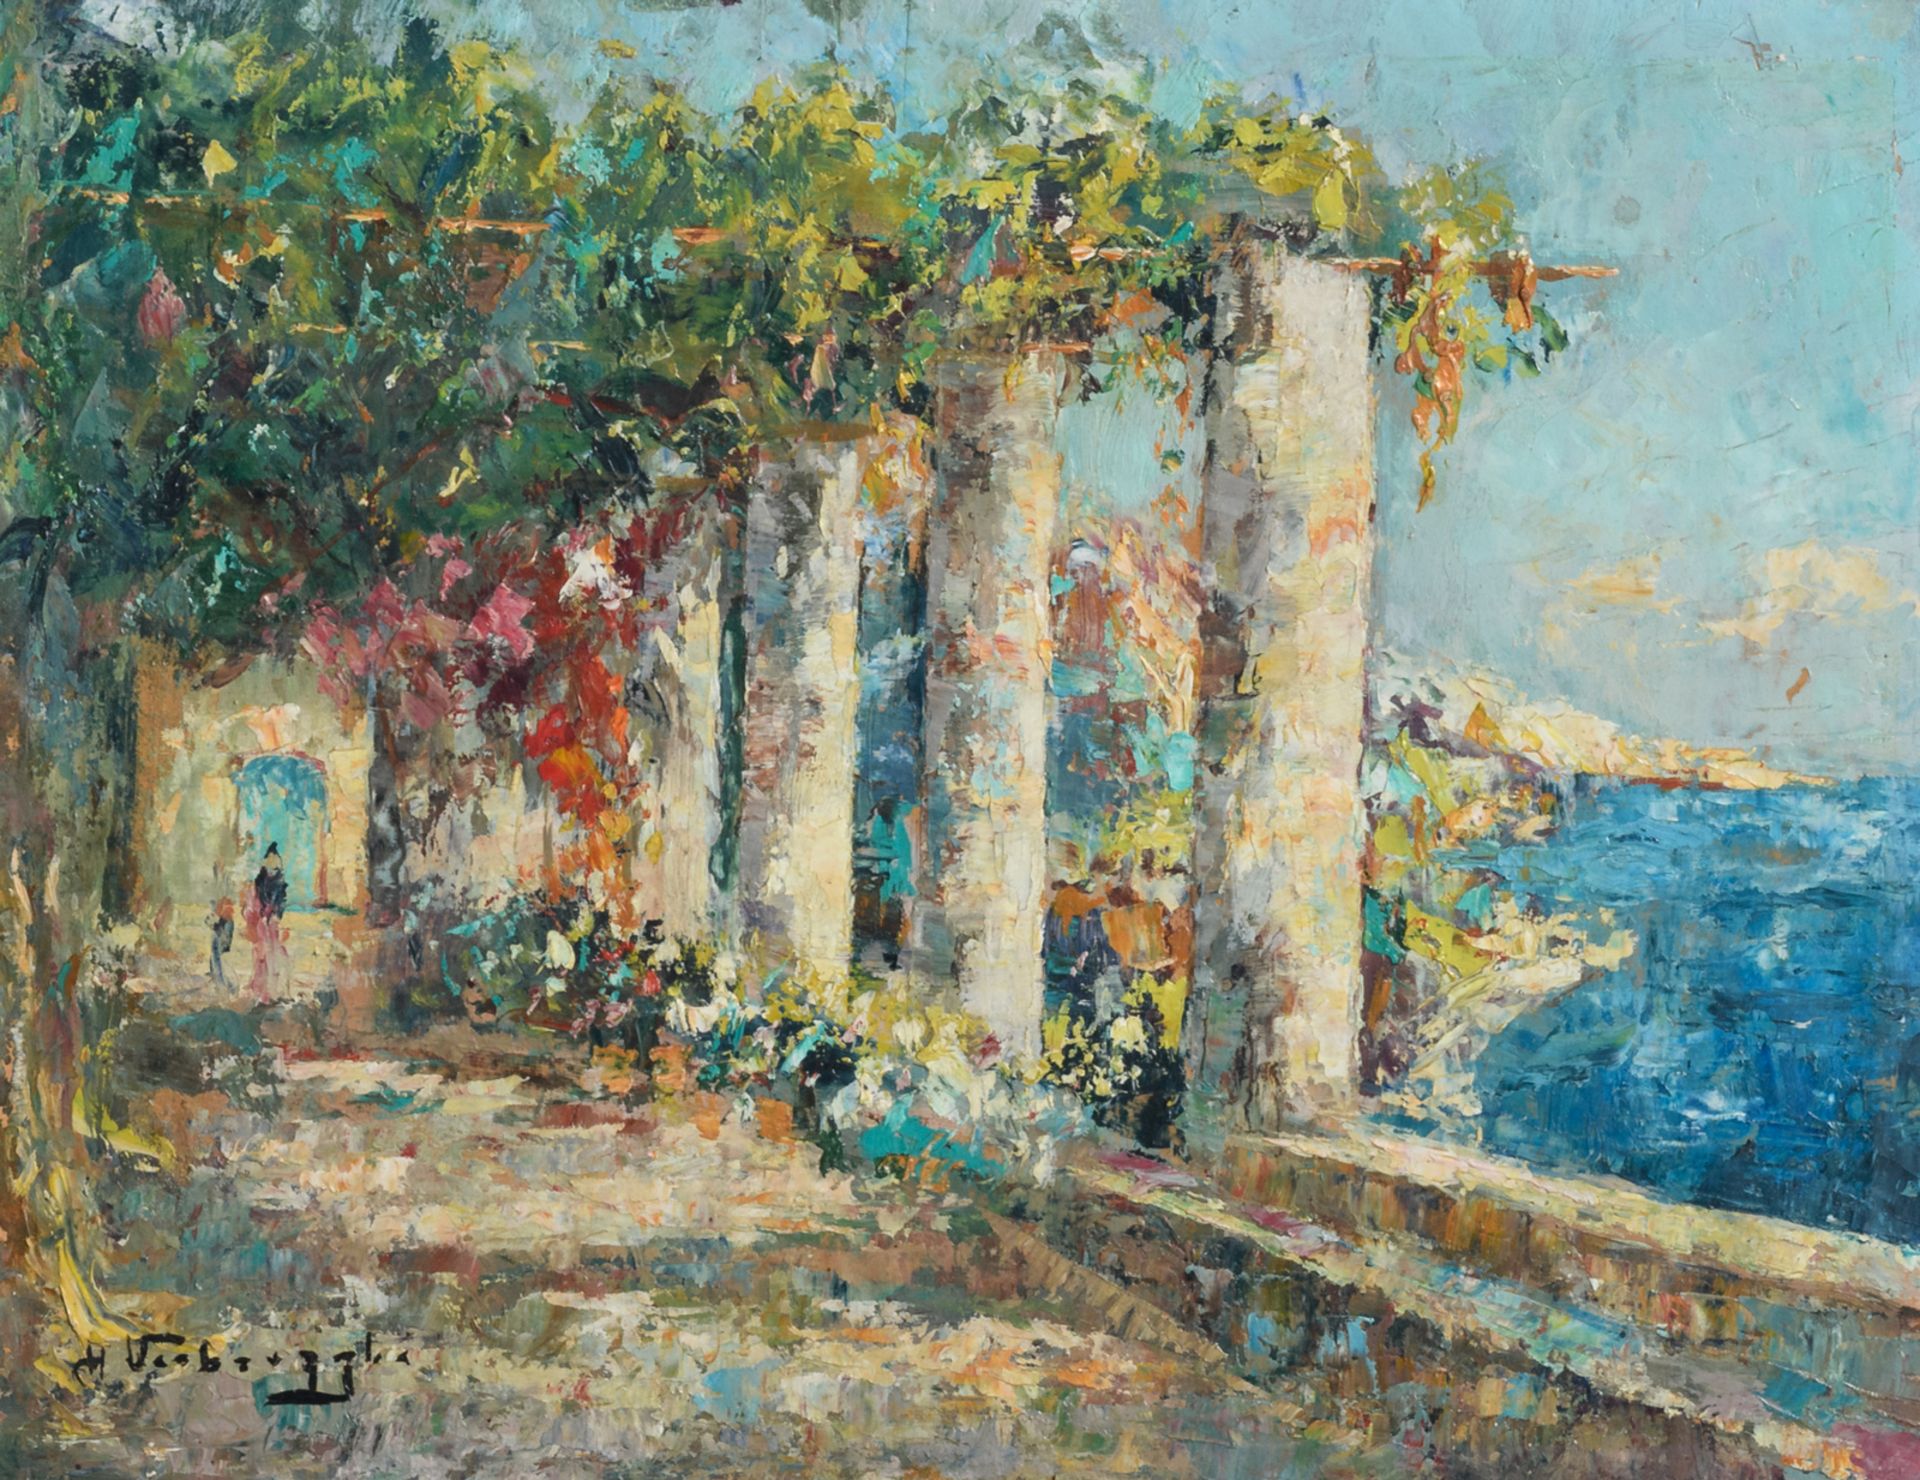 Verbrugghe Ch., 'Pergola in Sorento Amalfi', oil on plywood, 25,5 x 33,5 cm